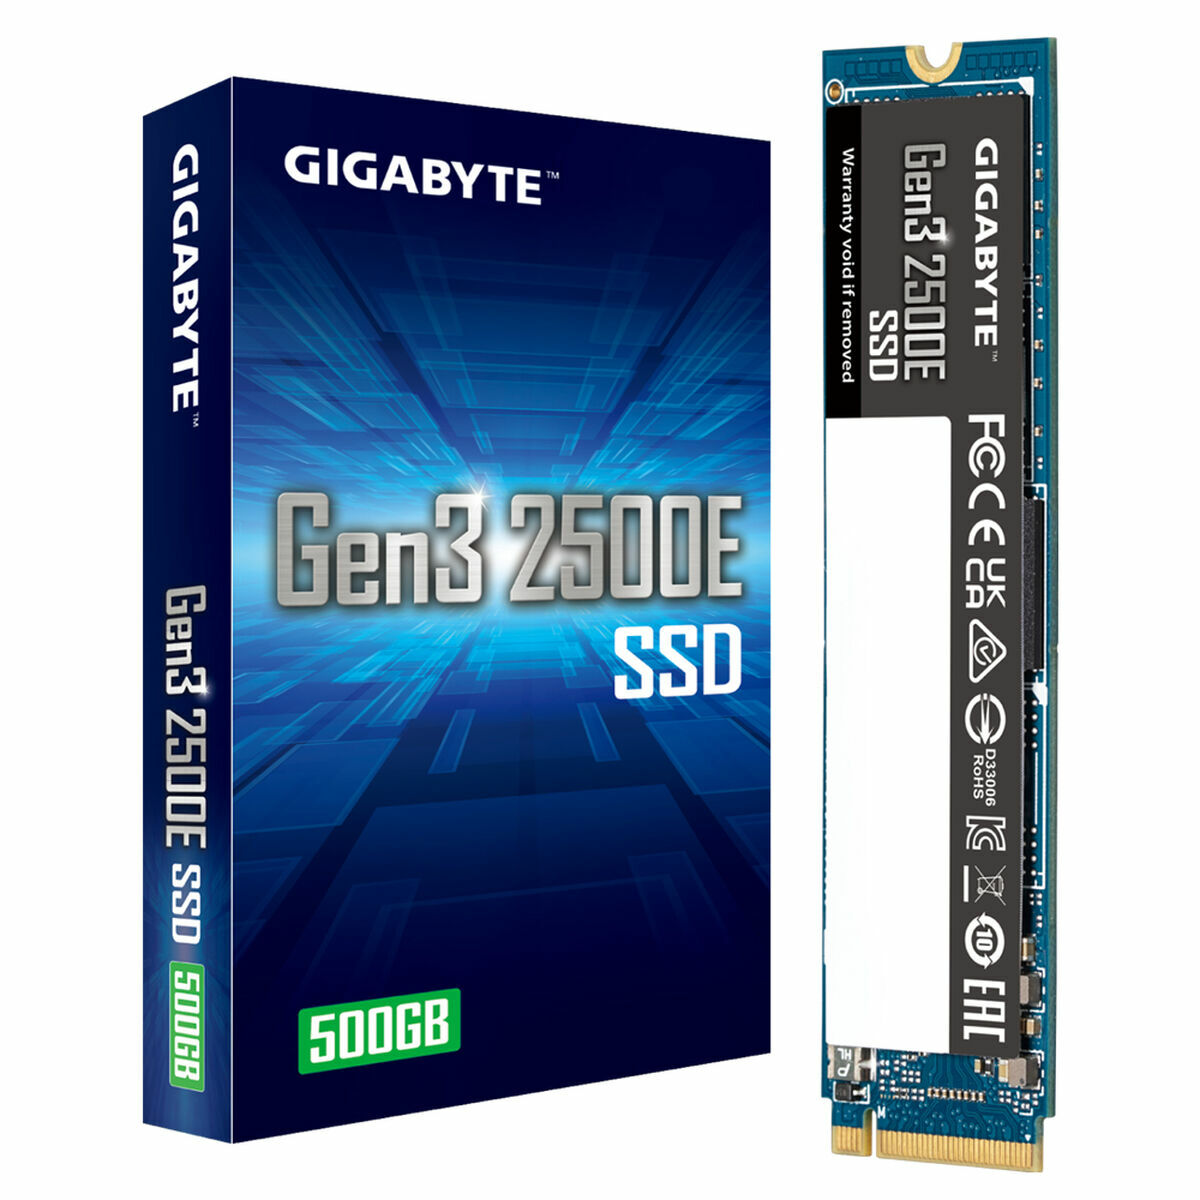 Harddisk Gigabyte Gen3 2500E SSD 500GB 500 GB SSD SSD